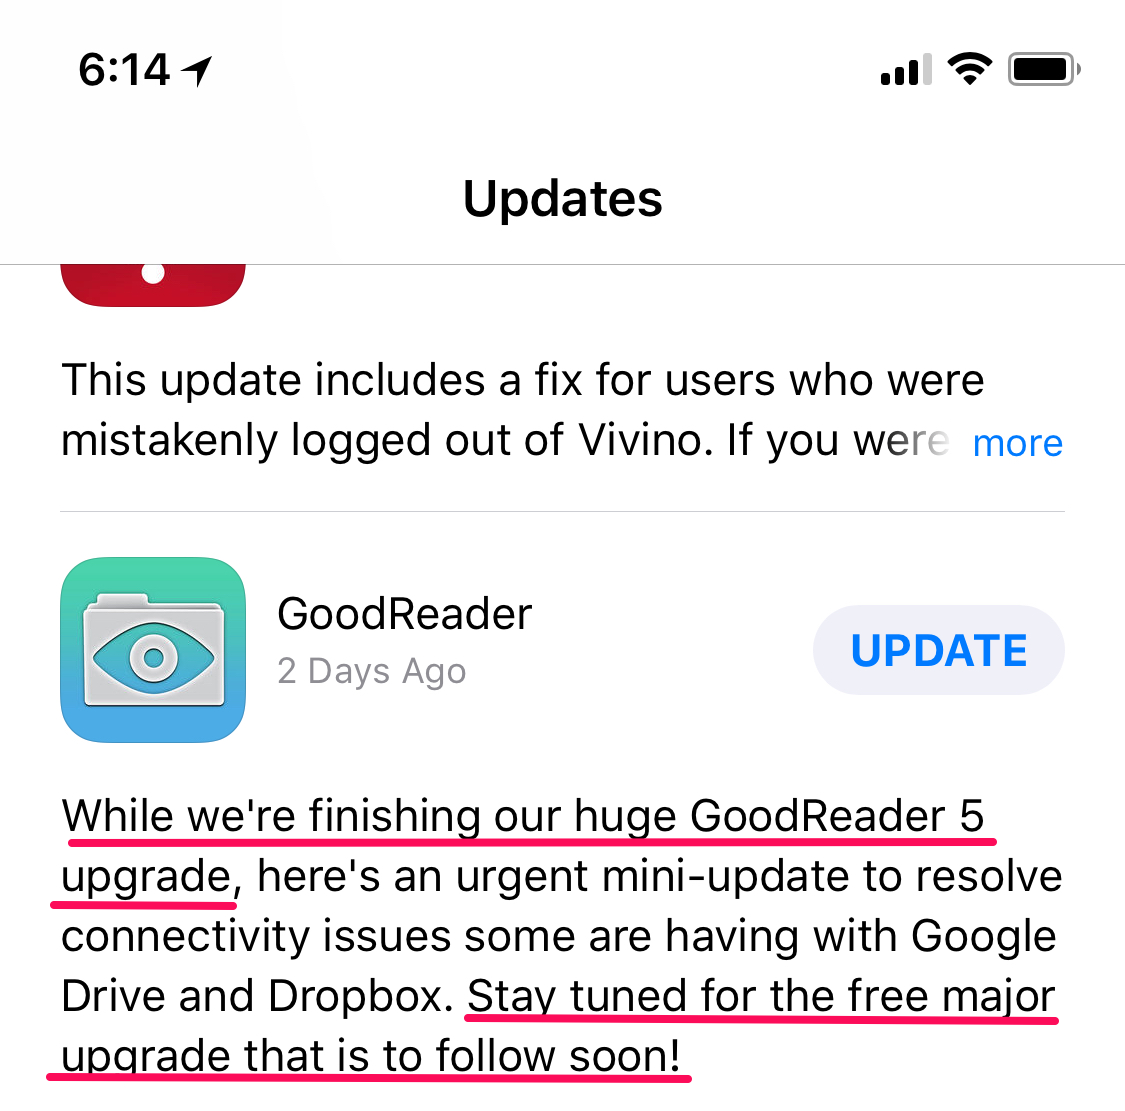 goodreader_update